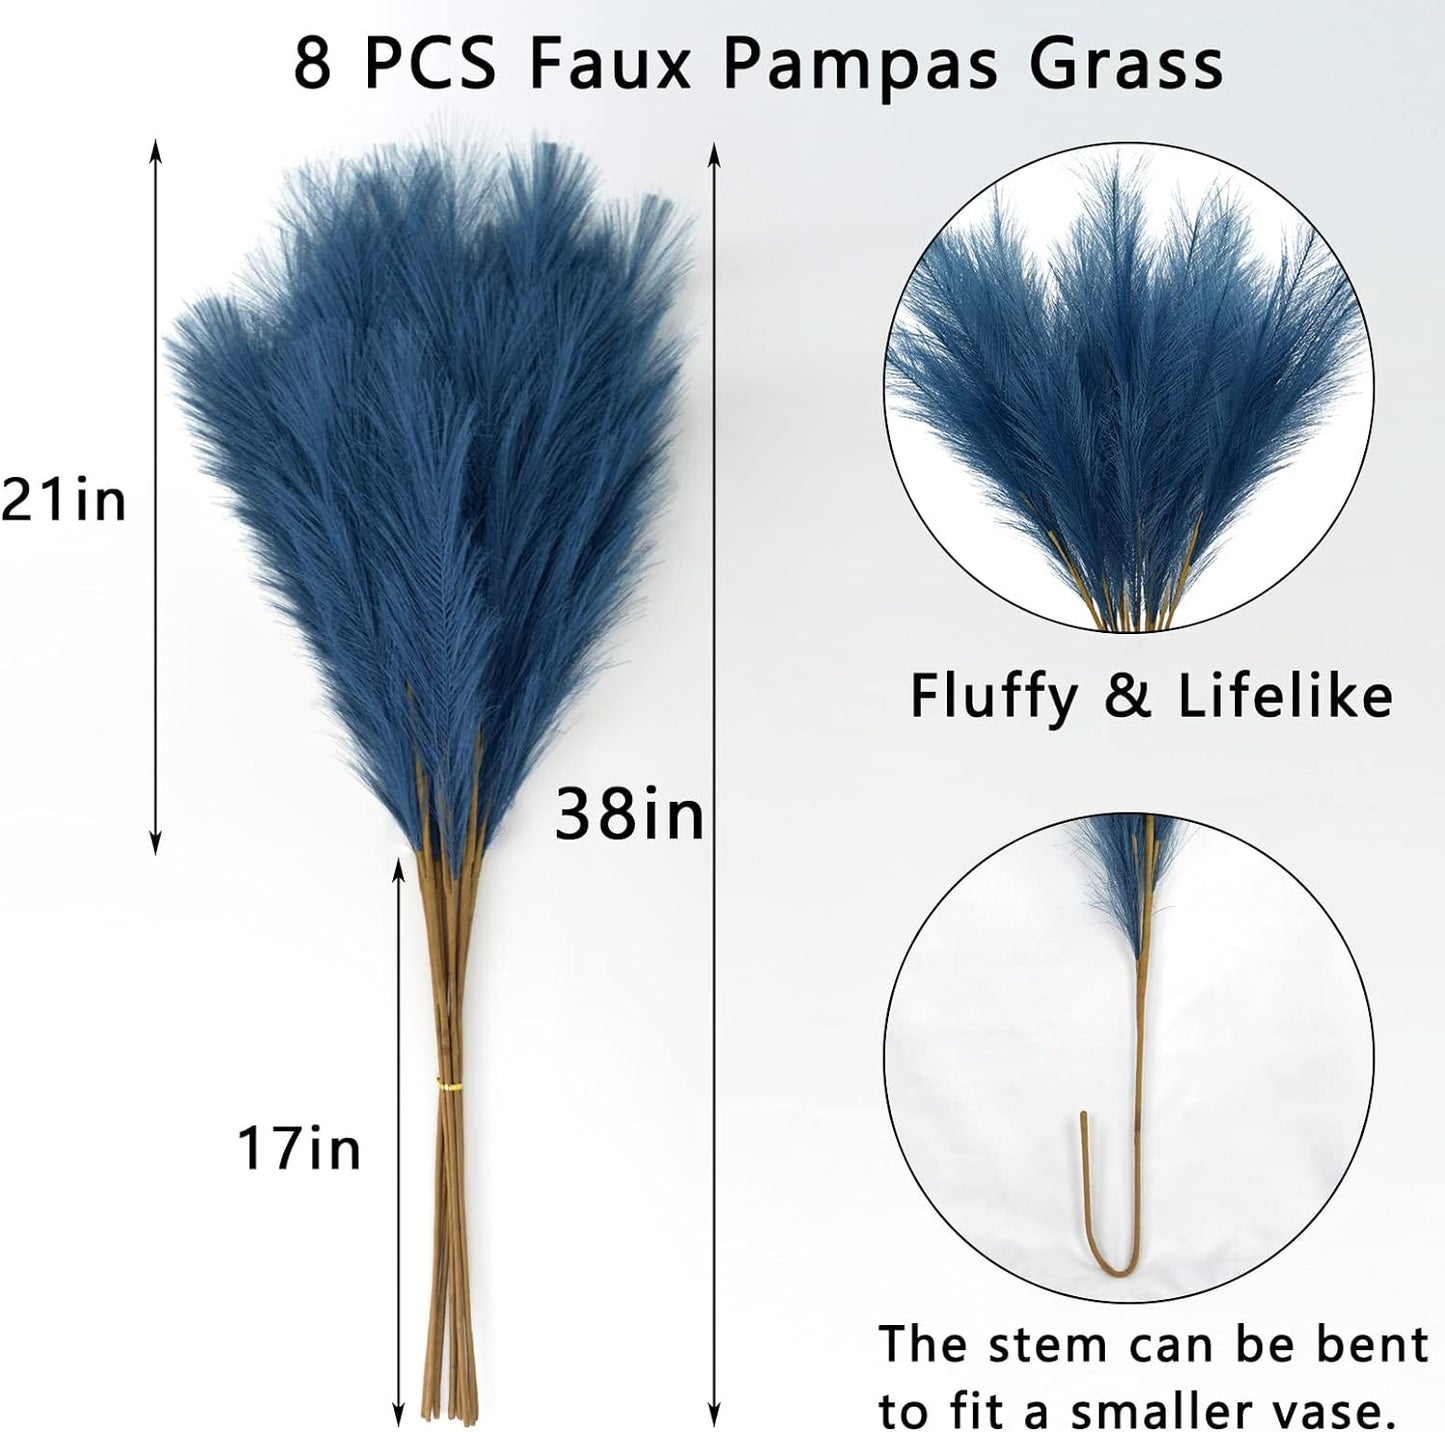 Faux Pampas Grass